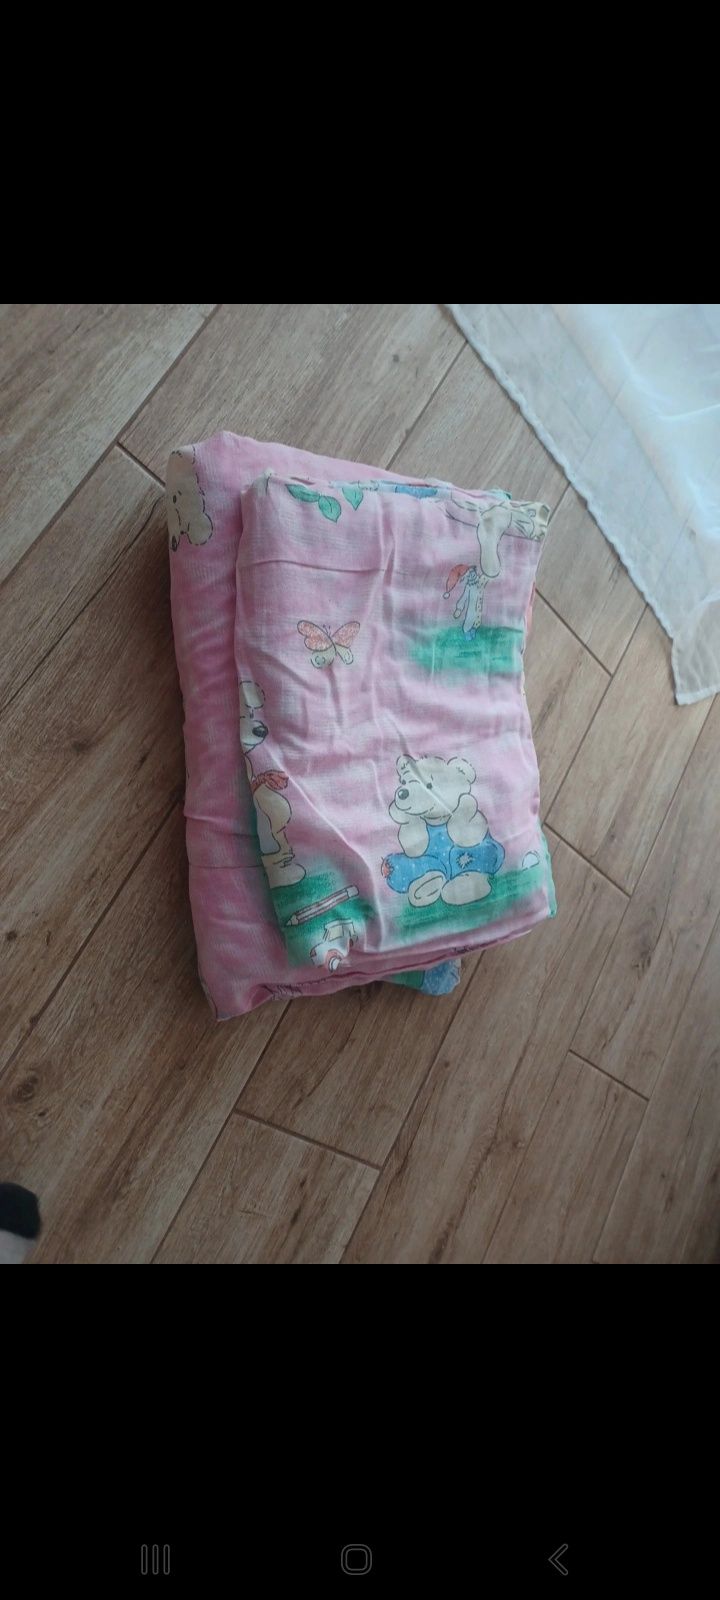 Poduszka i kołdra wsad do pościeli dla dziecka